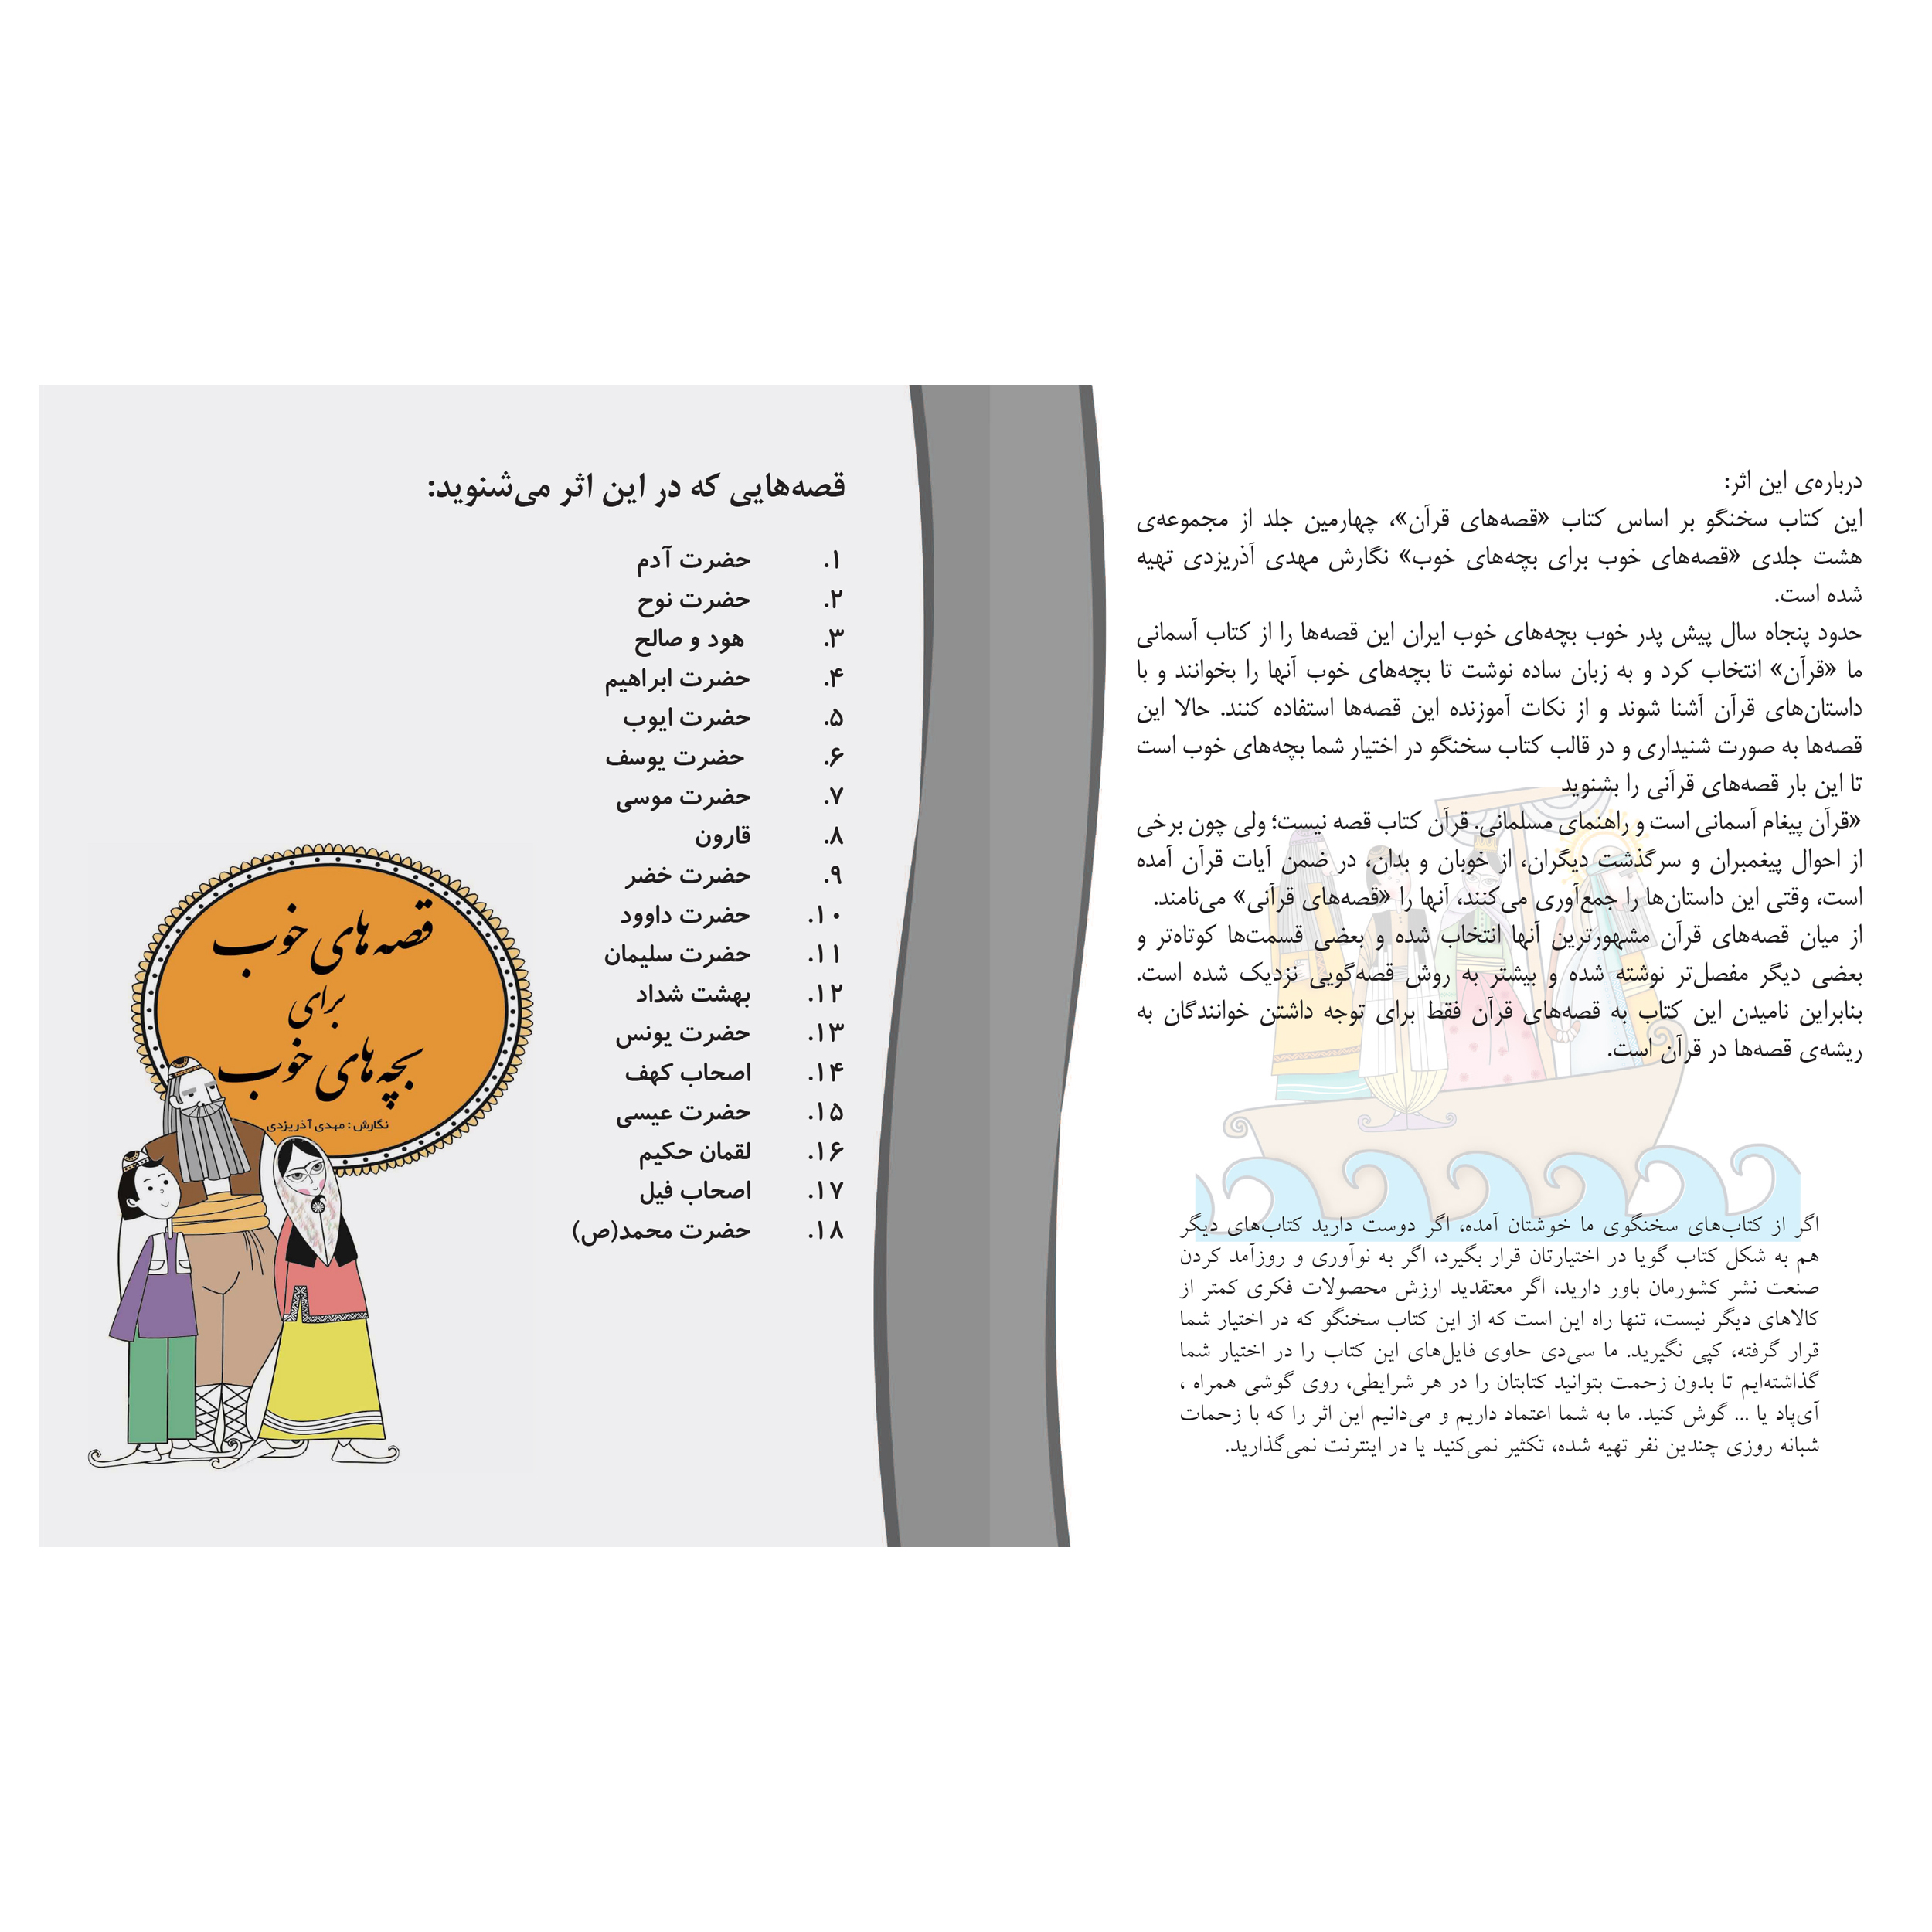 کتاب صوتی قصه های خوب برای بچه های خوب - قصه های قرآن 1 و 2